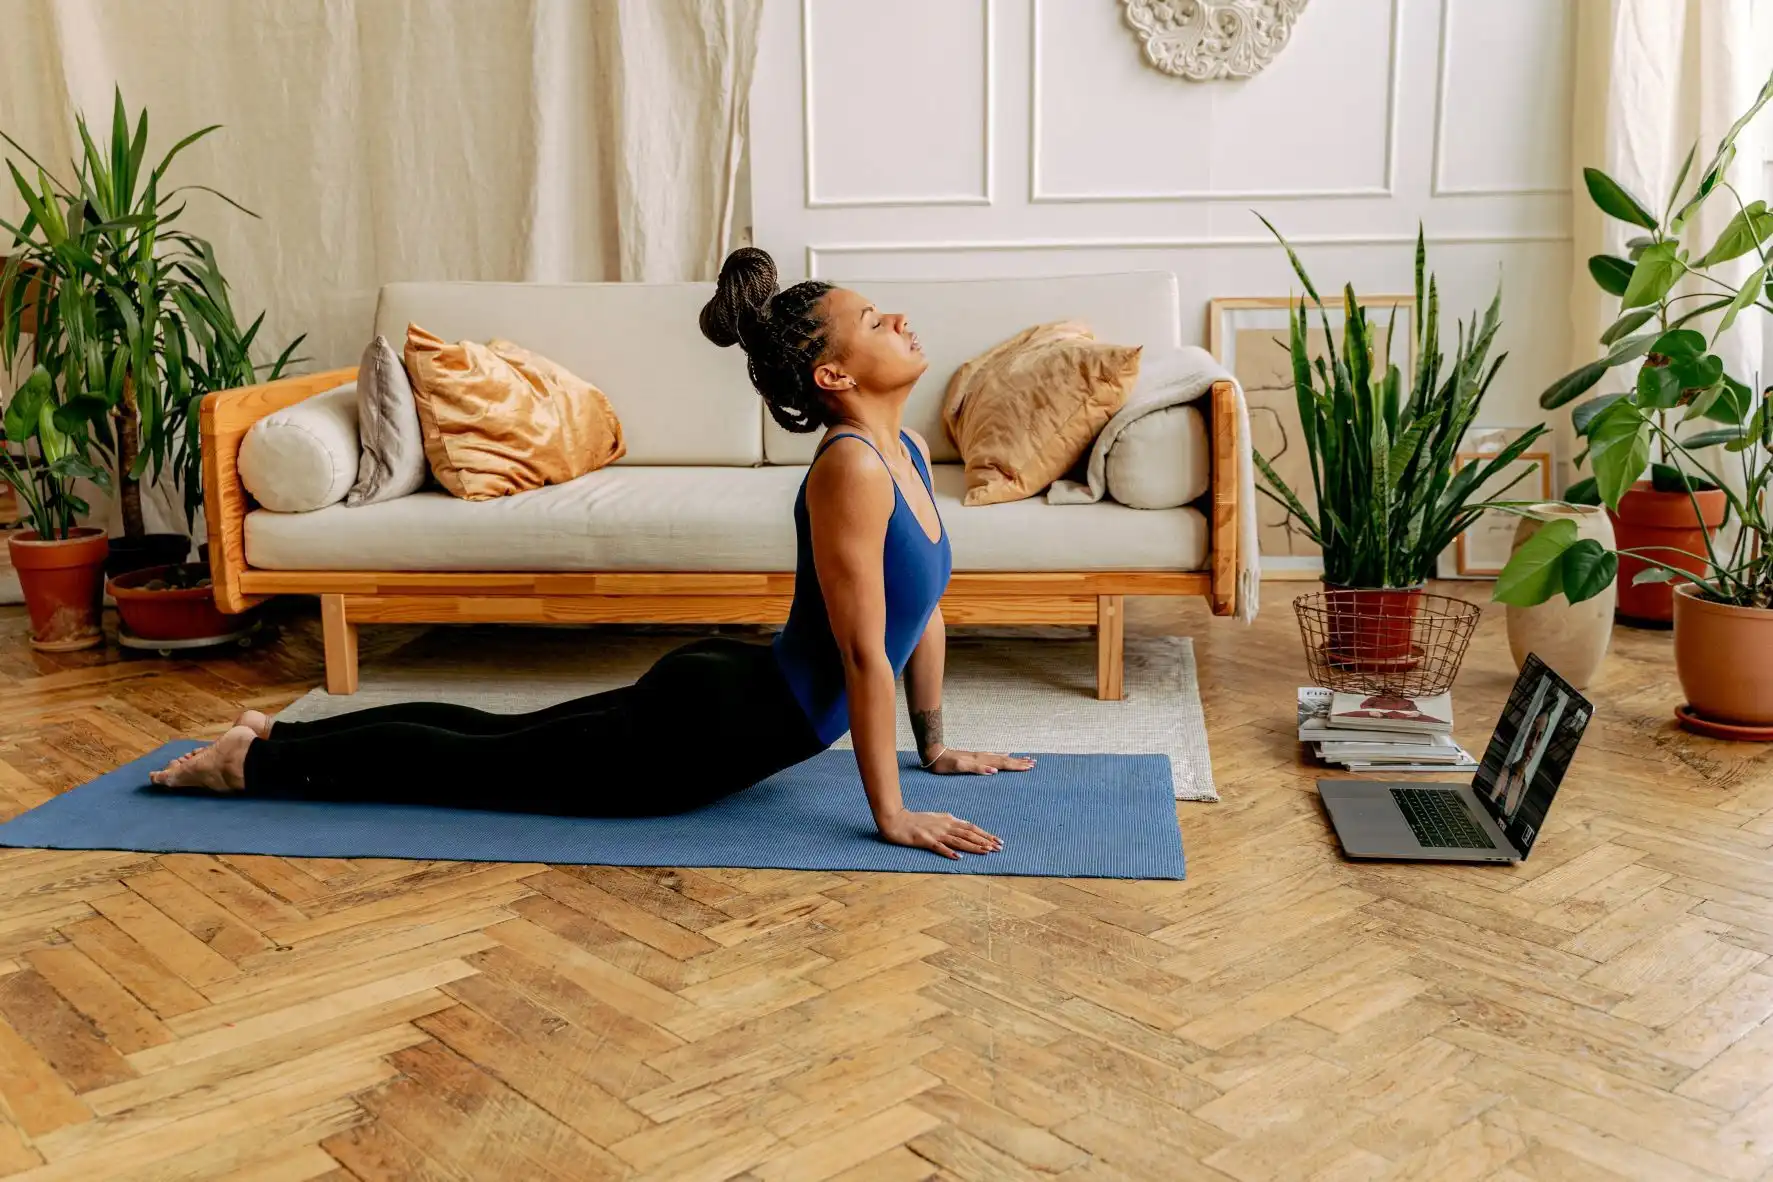 Une personne dans son salon en train de faire du yoga, et plus exactement la posture du cobra